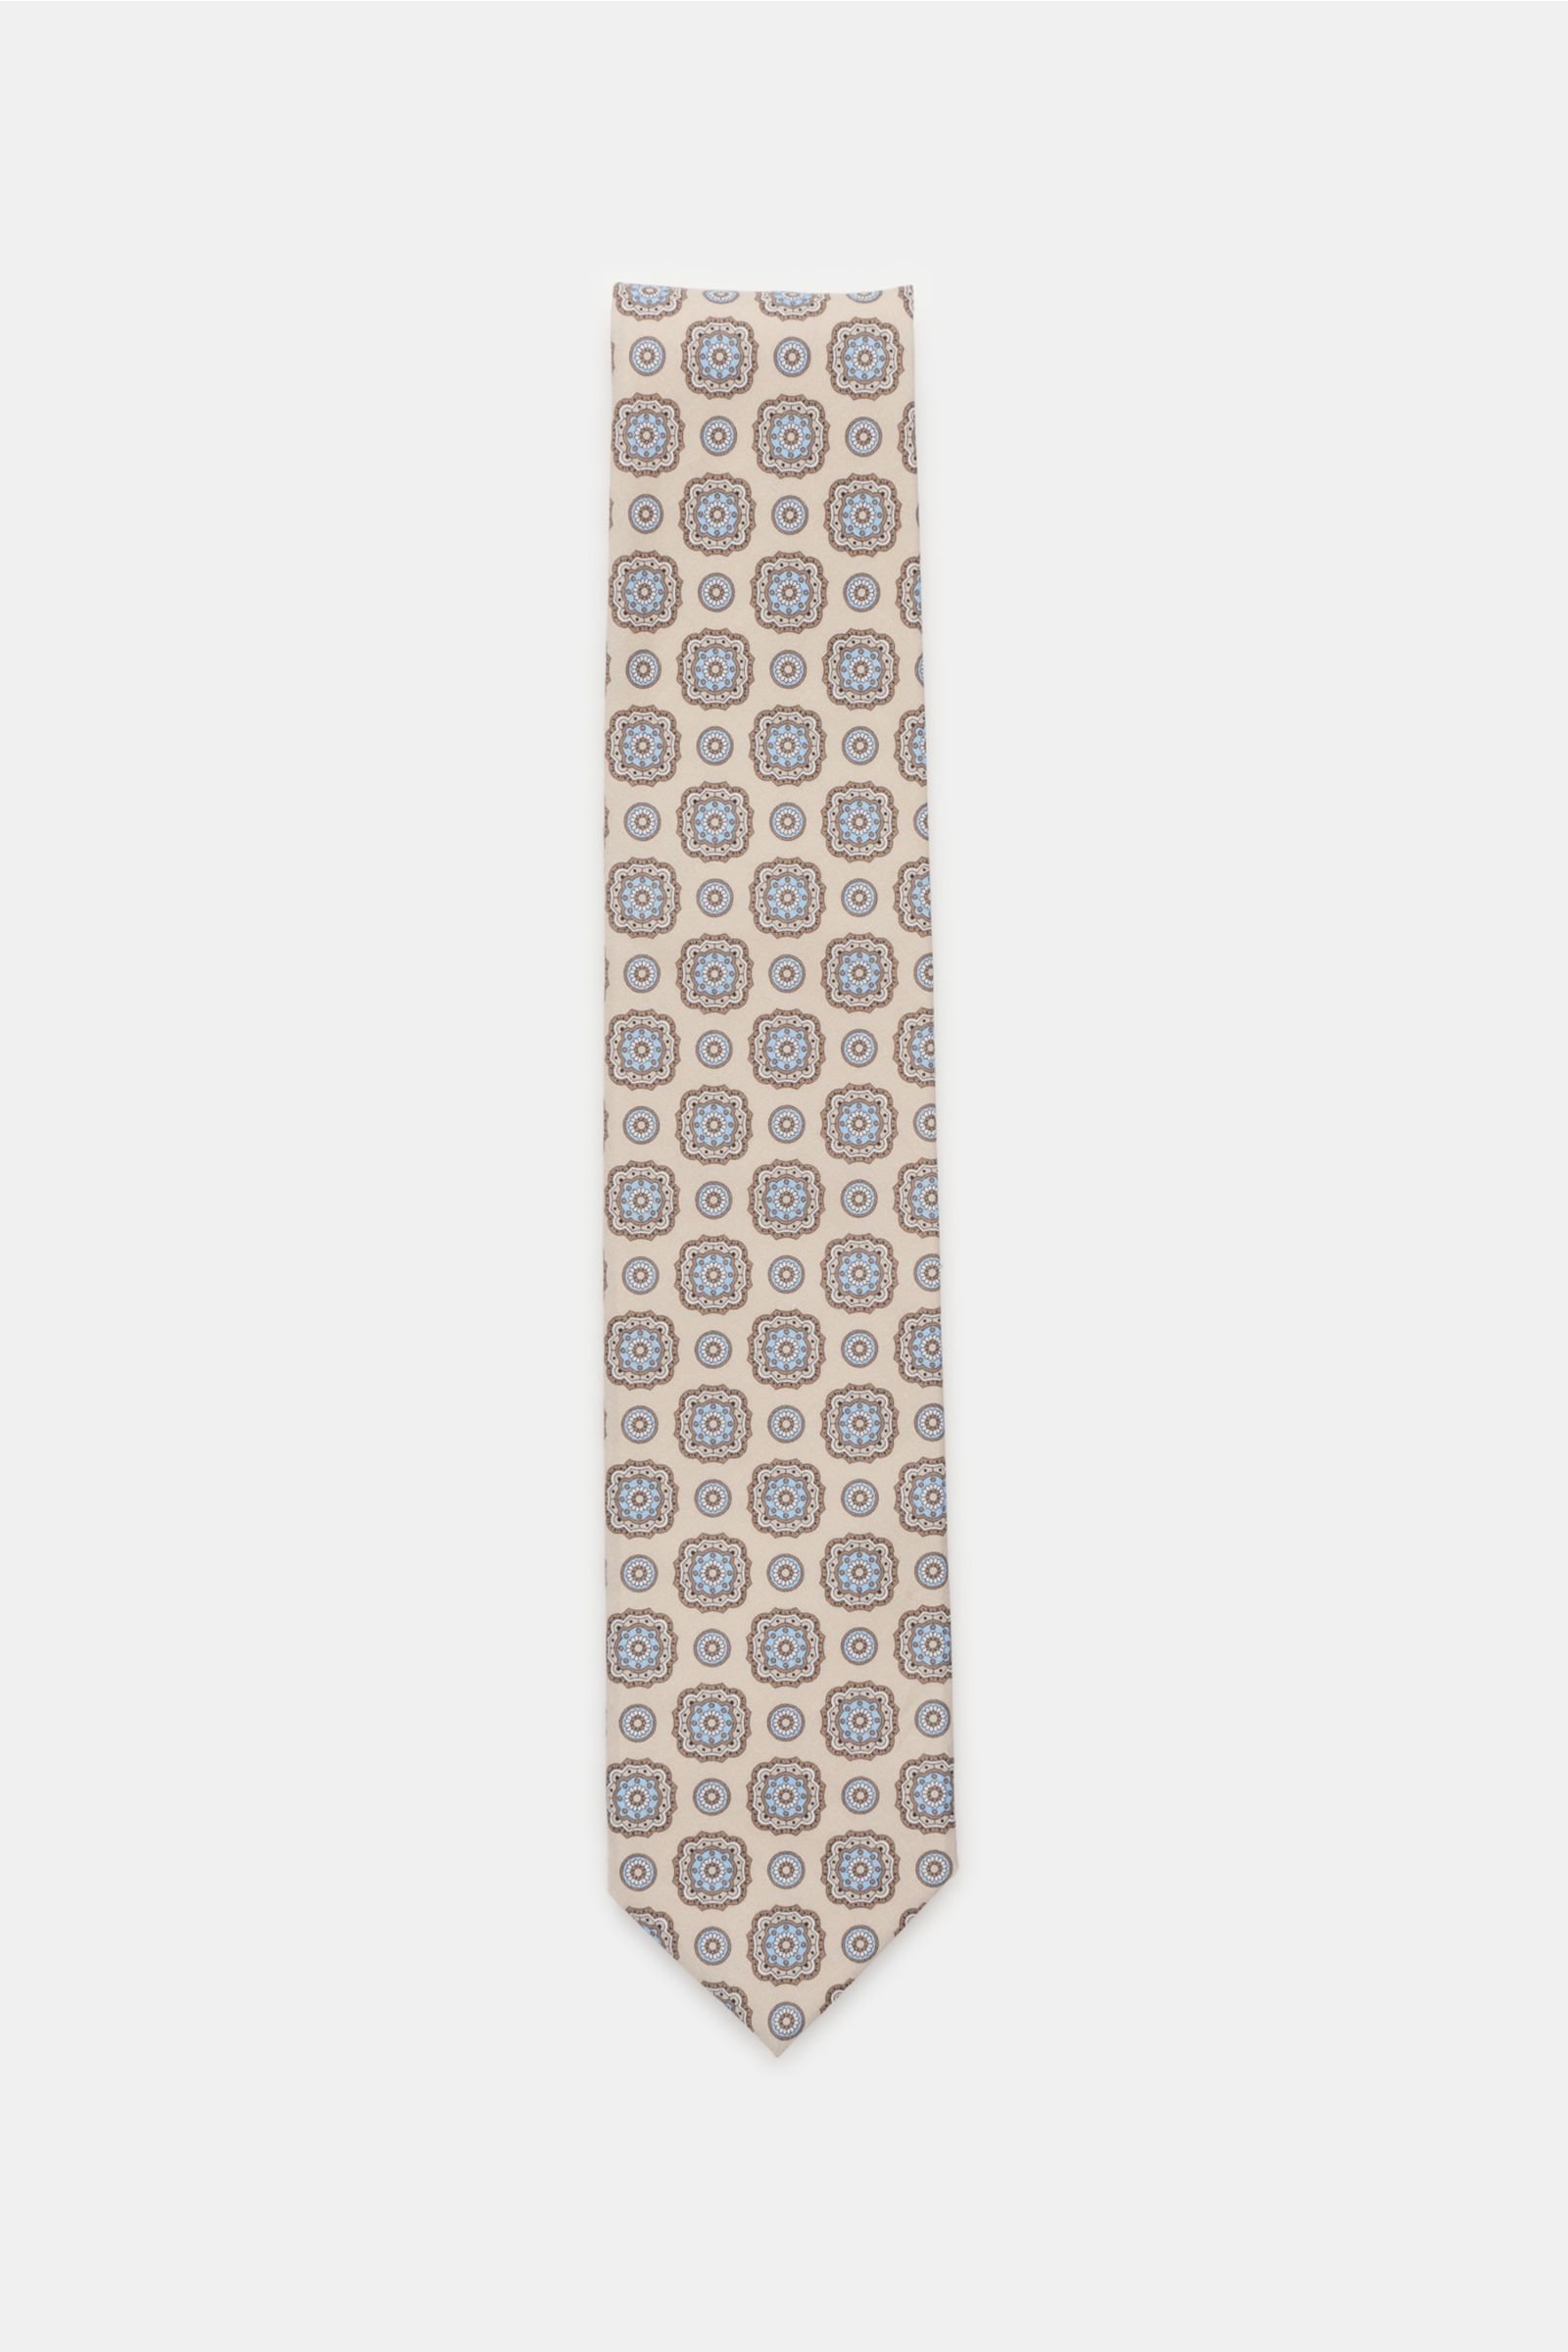 Tie grey-brown patterned